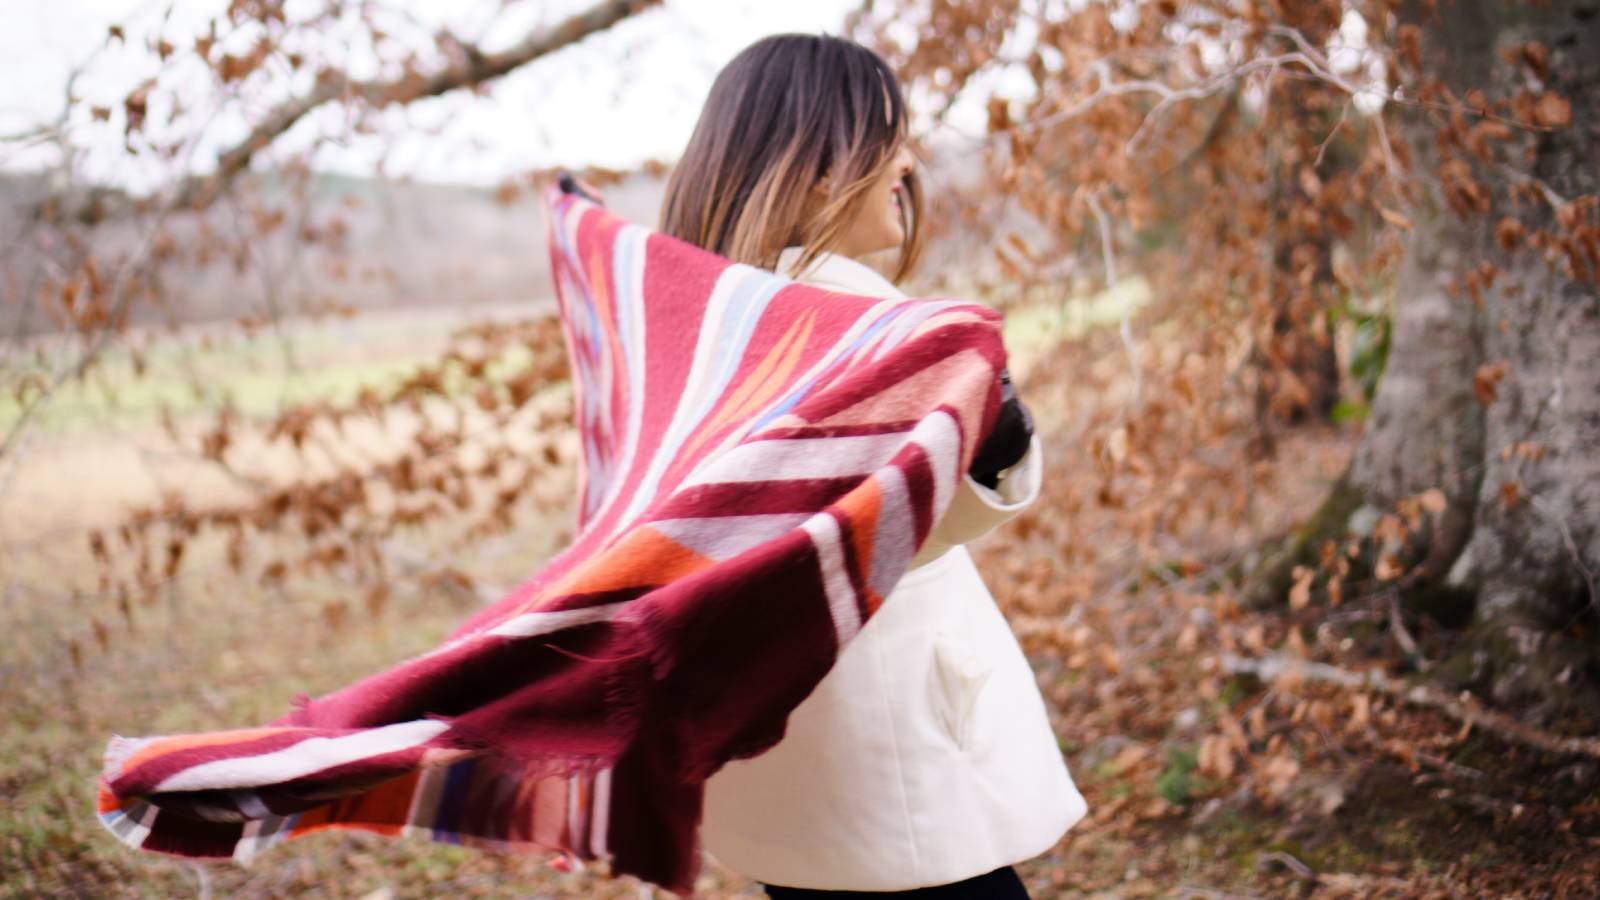 Sabahları ayrılmak zorsa battaniyenizi paltoya dönüştürün (Battaniyeden palto nasıl yapılır?)